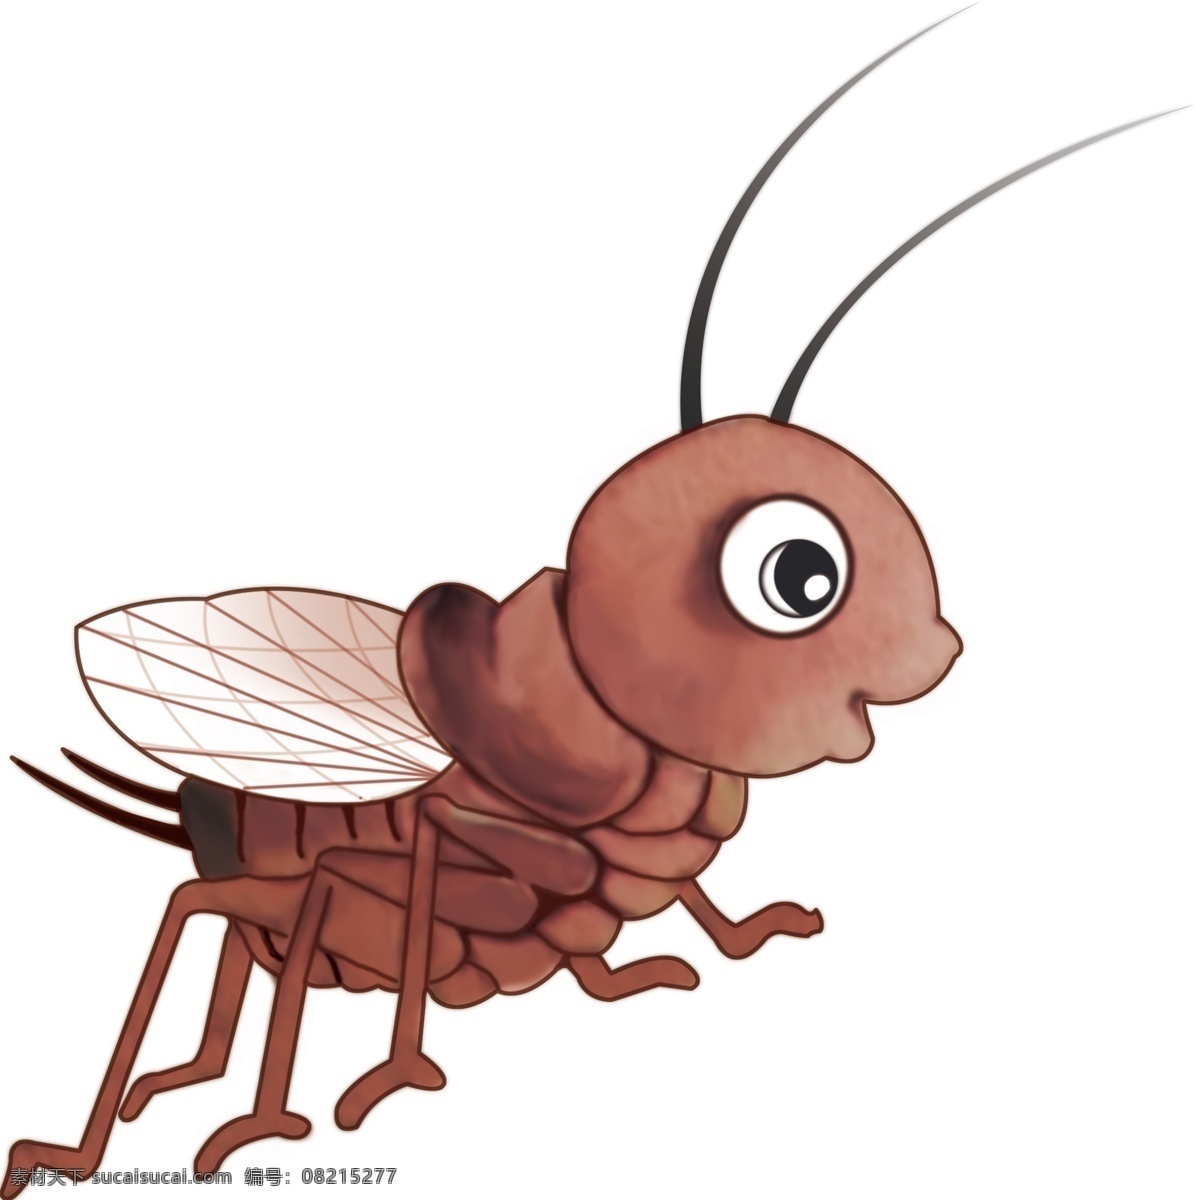 蛐蛐 虫子 昆虫 一年级教具 课本插图 生物世界